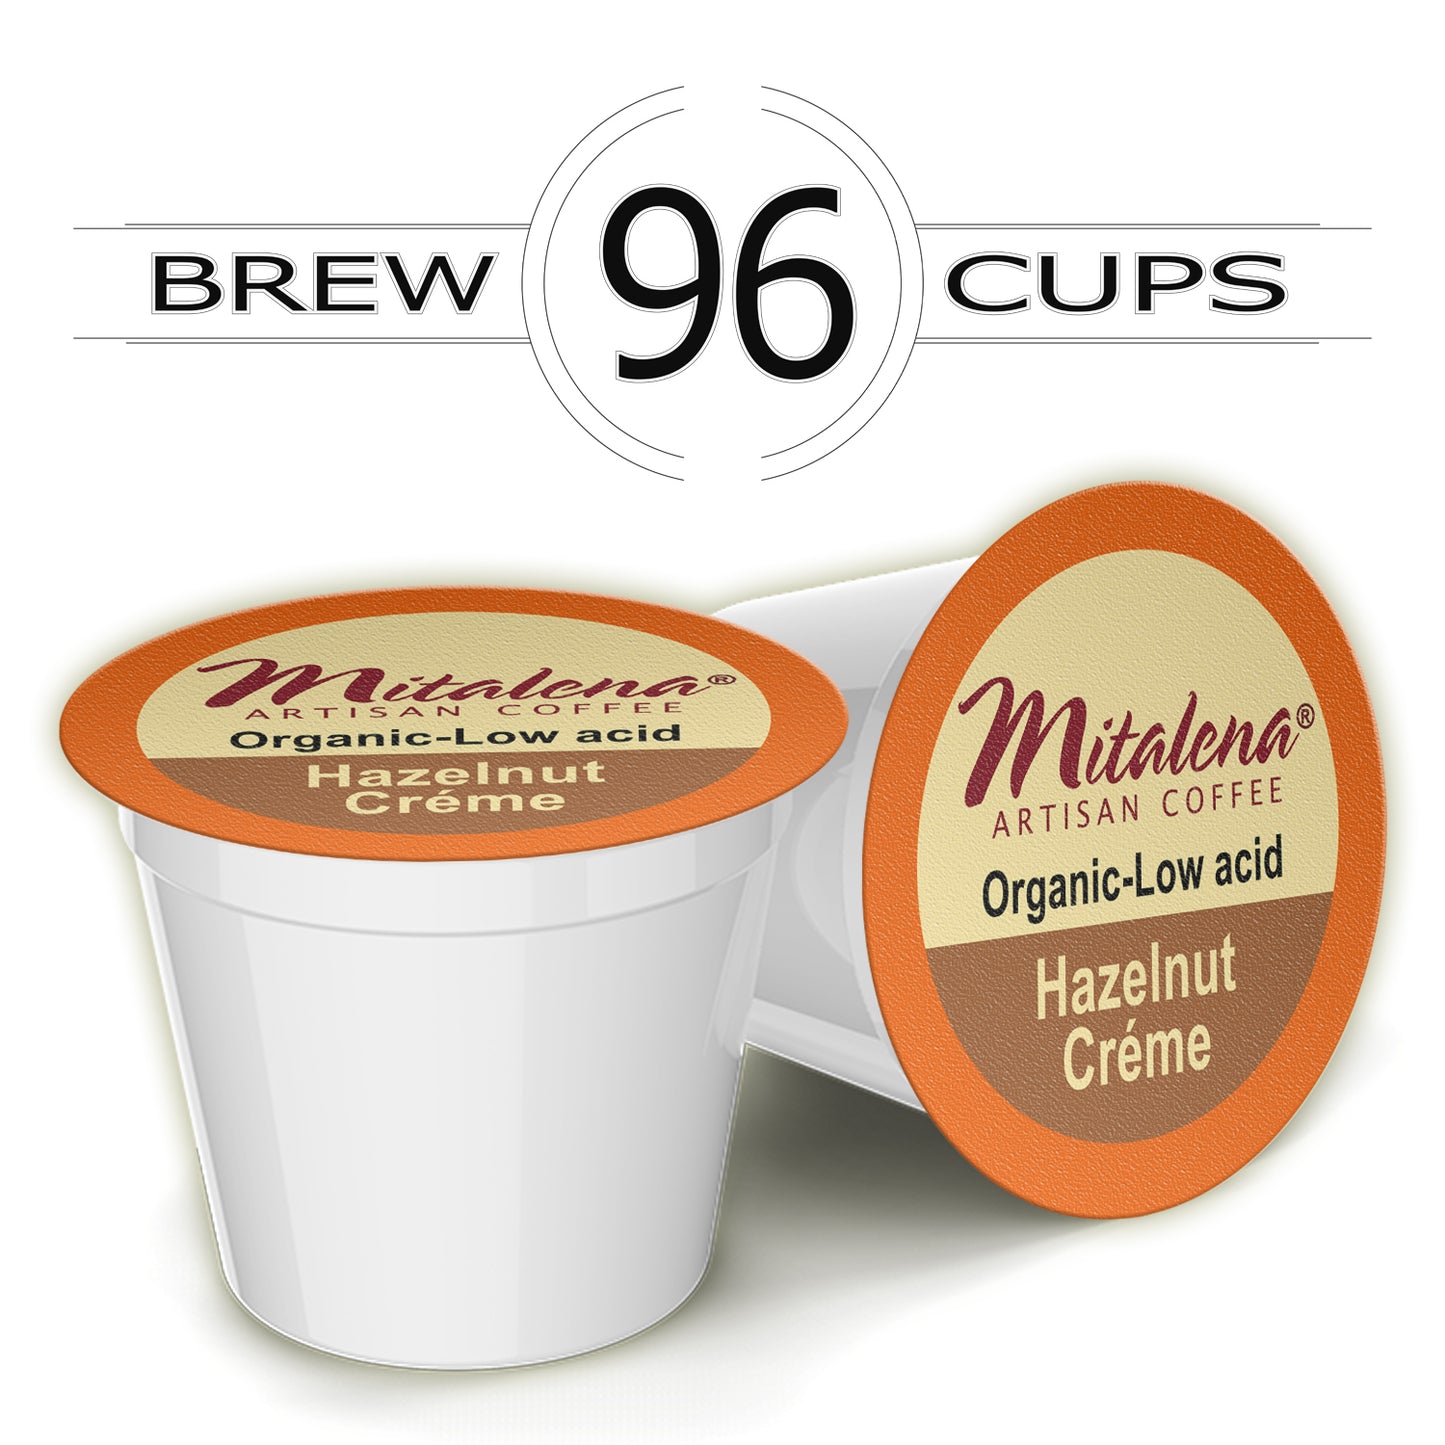 Mitalena Coffee - Hazelnut Creme Low Acid Coffee Pods for Keurig Coffee Maker 96 ct.